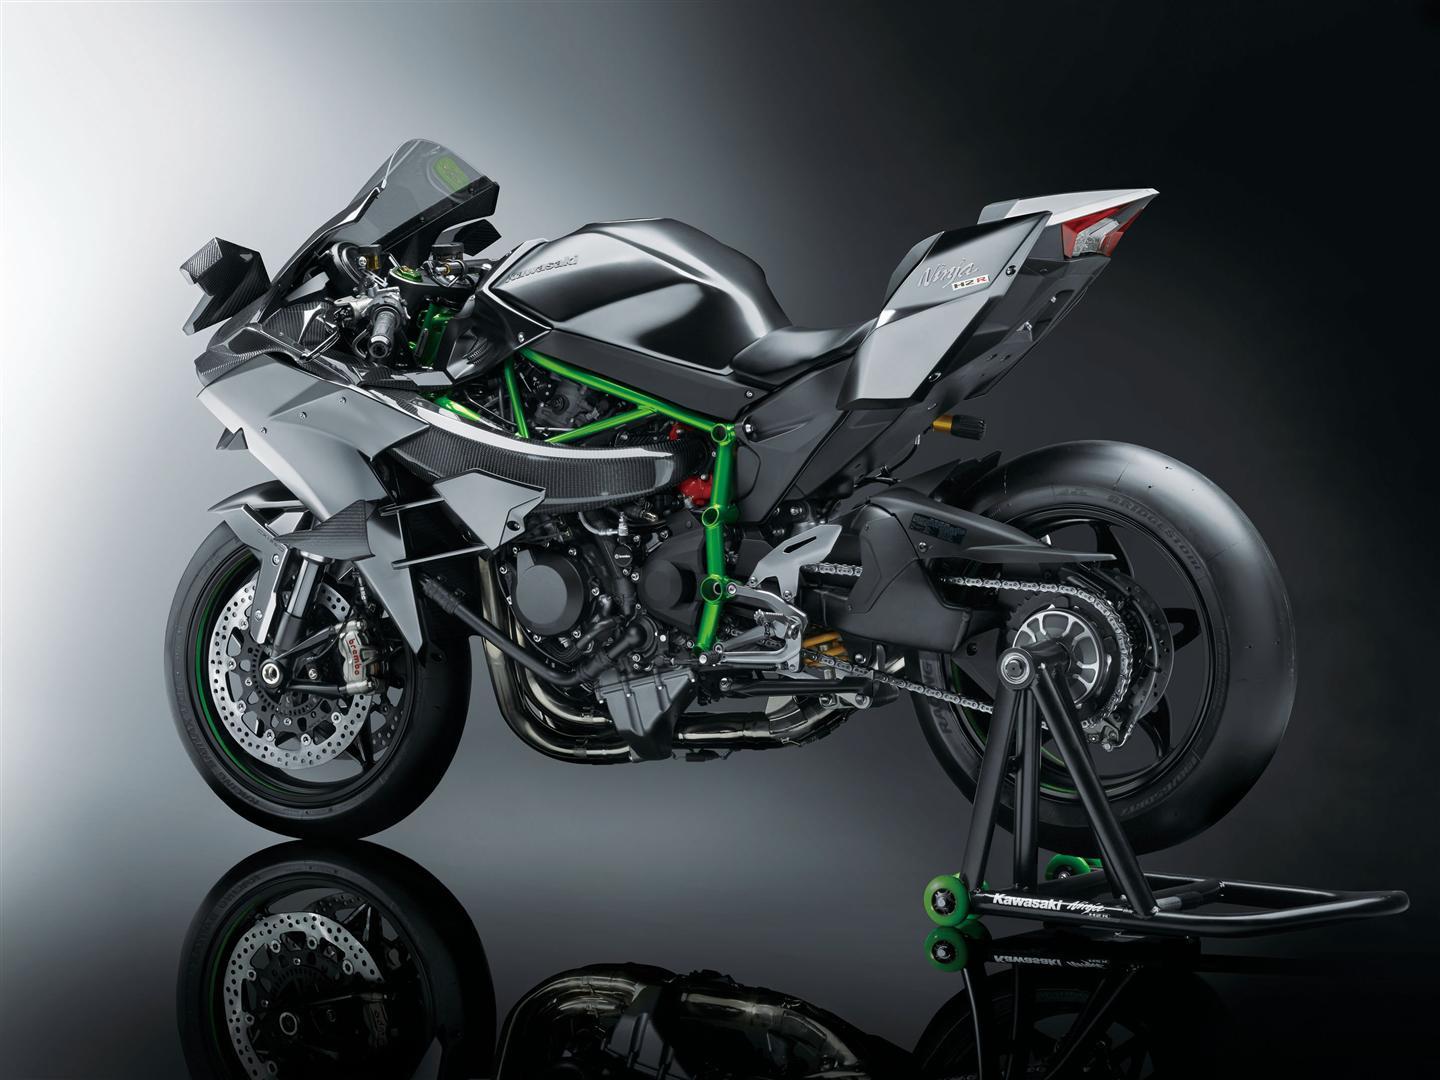 2022 Kawasaki Ninja Price, Top Speed Mileage in India